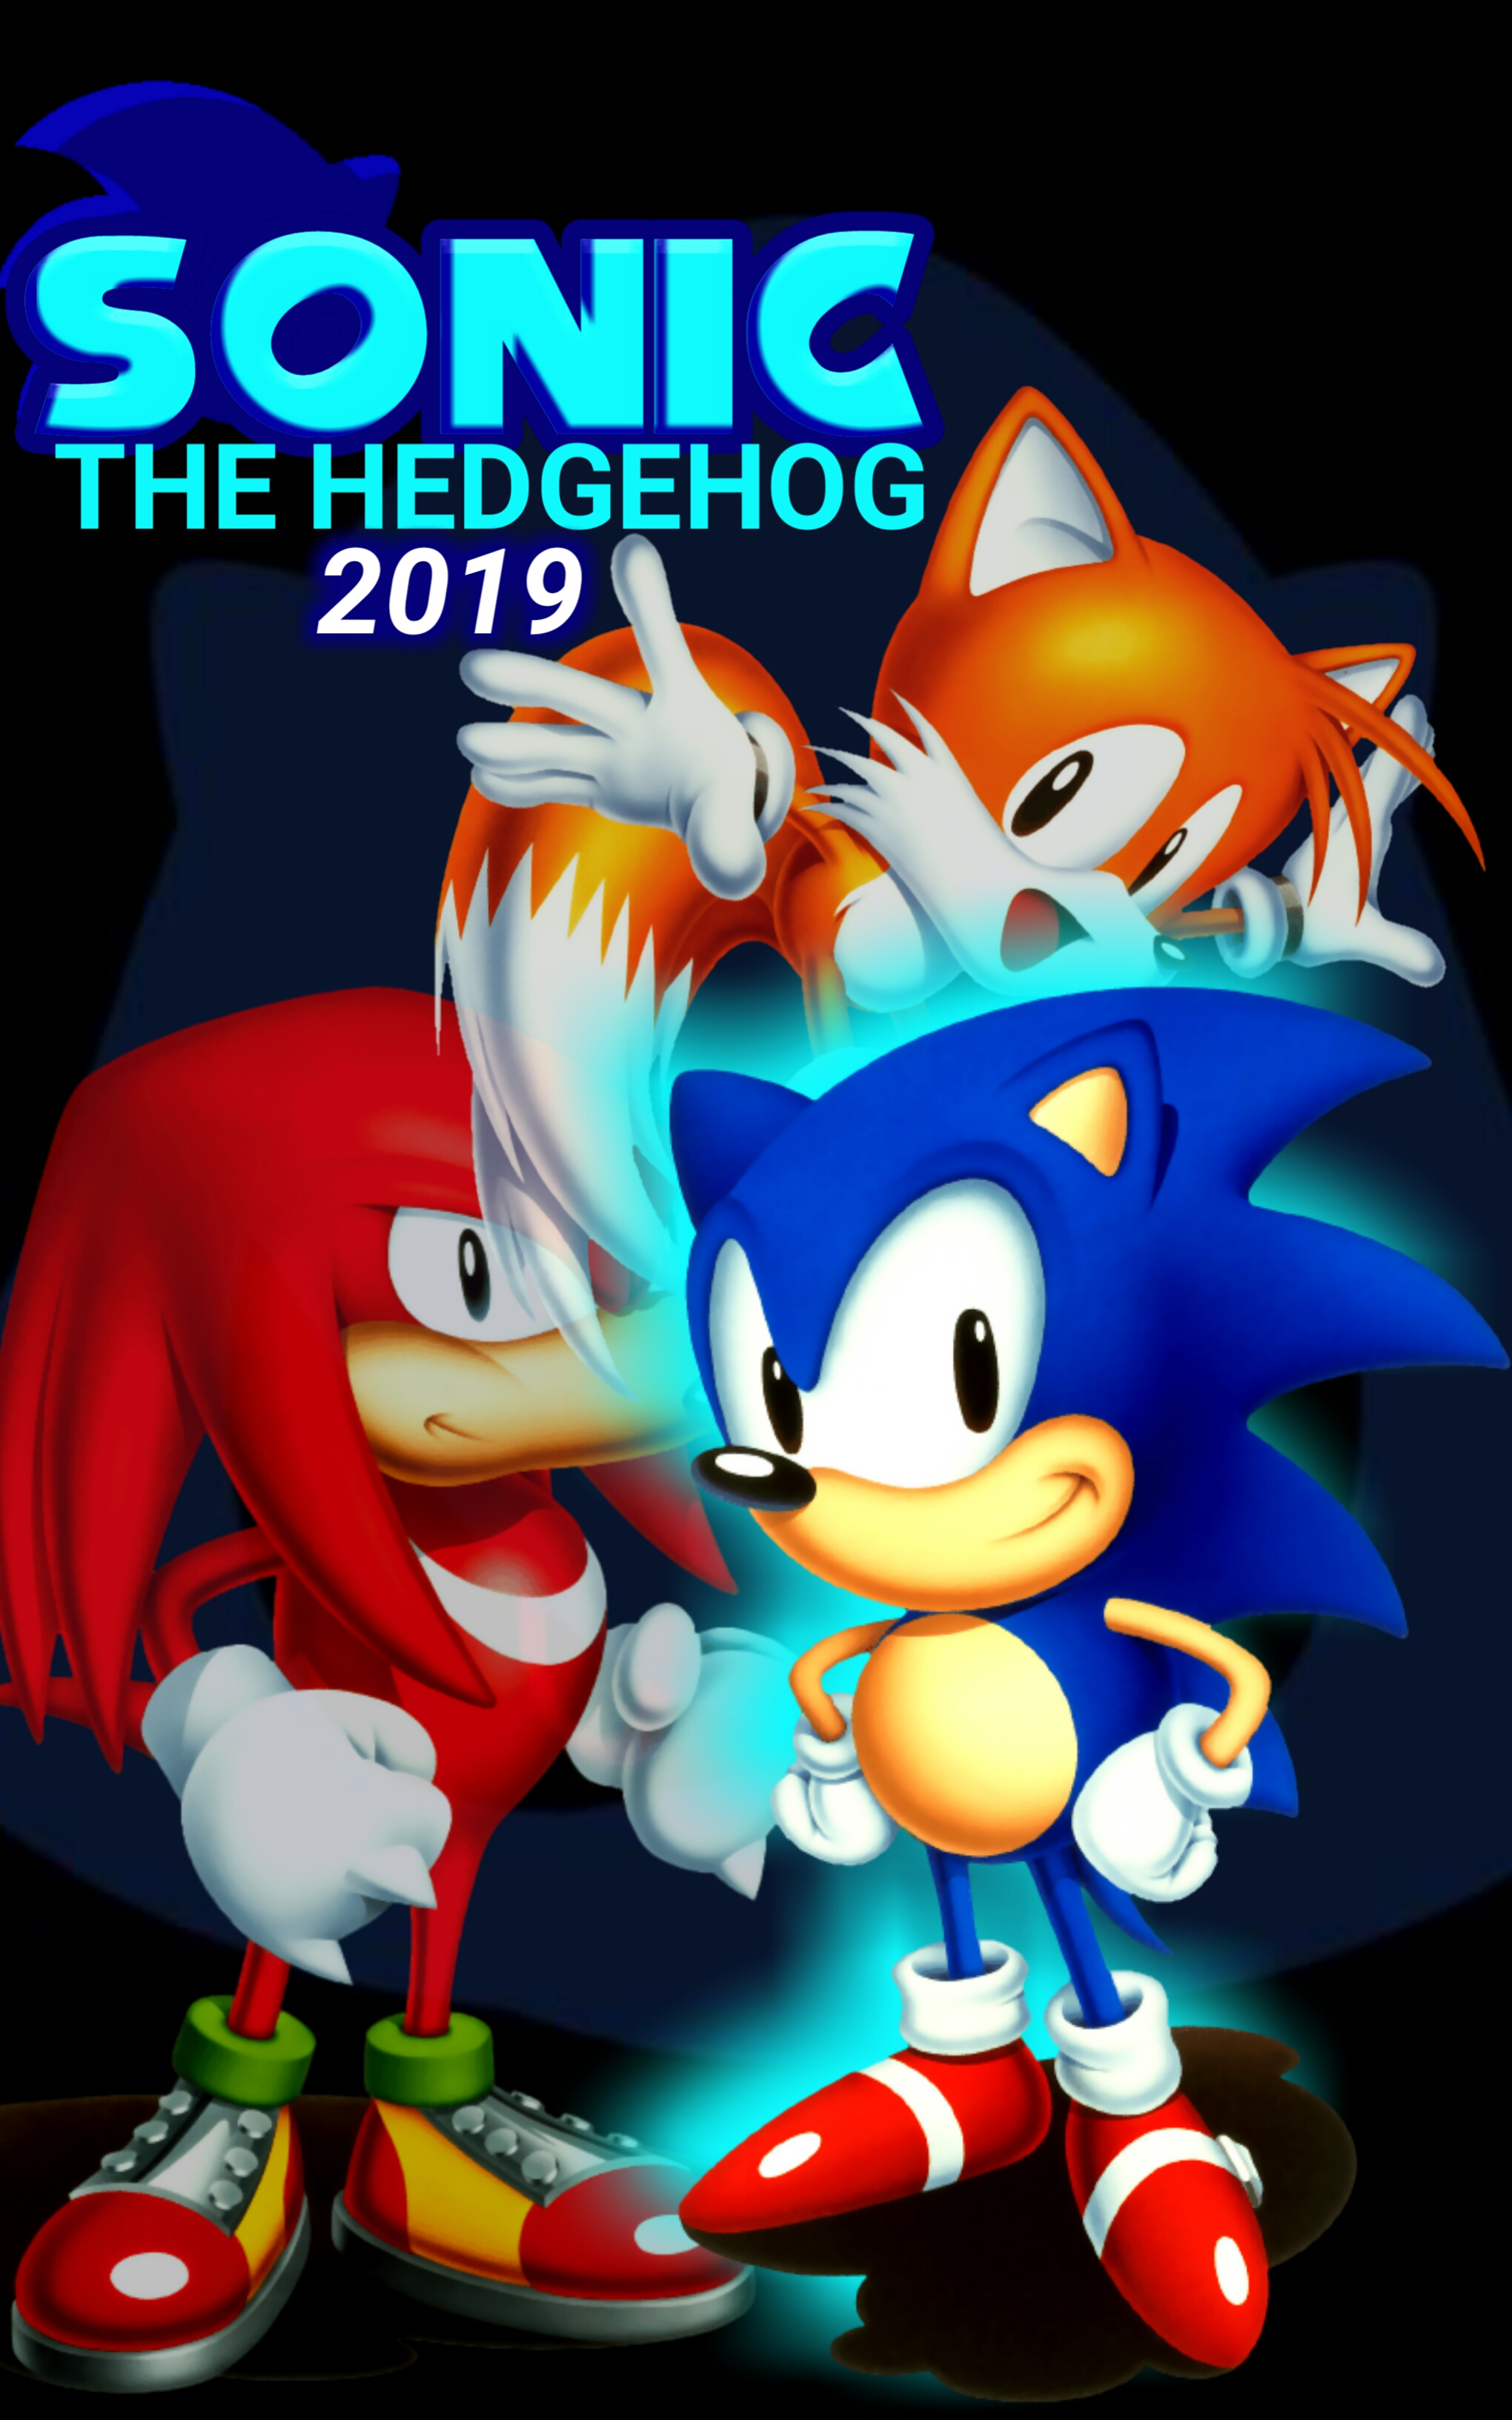 Tails voando do início ao fim - Sonic Adventure 